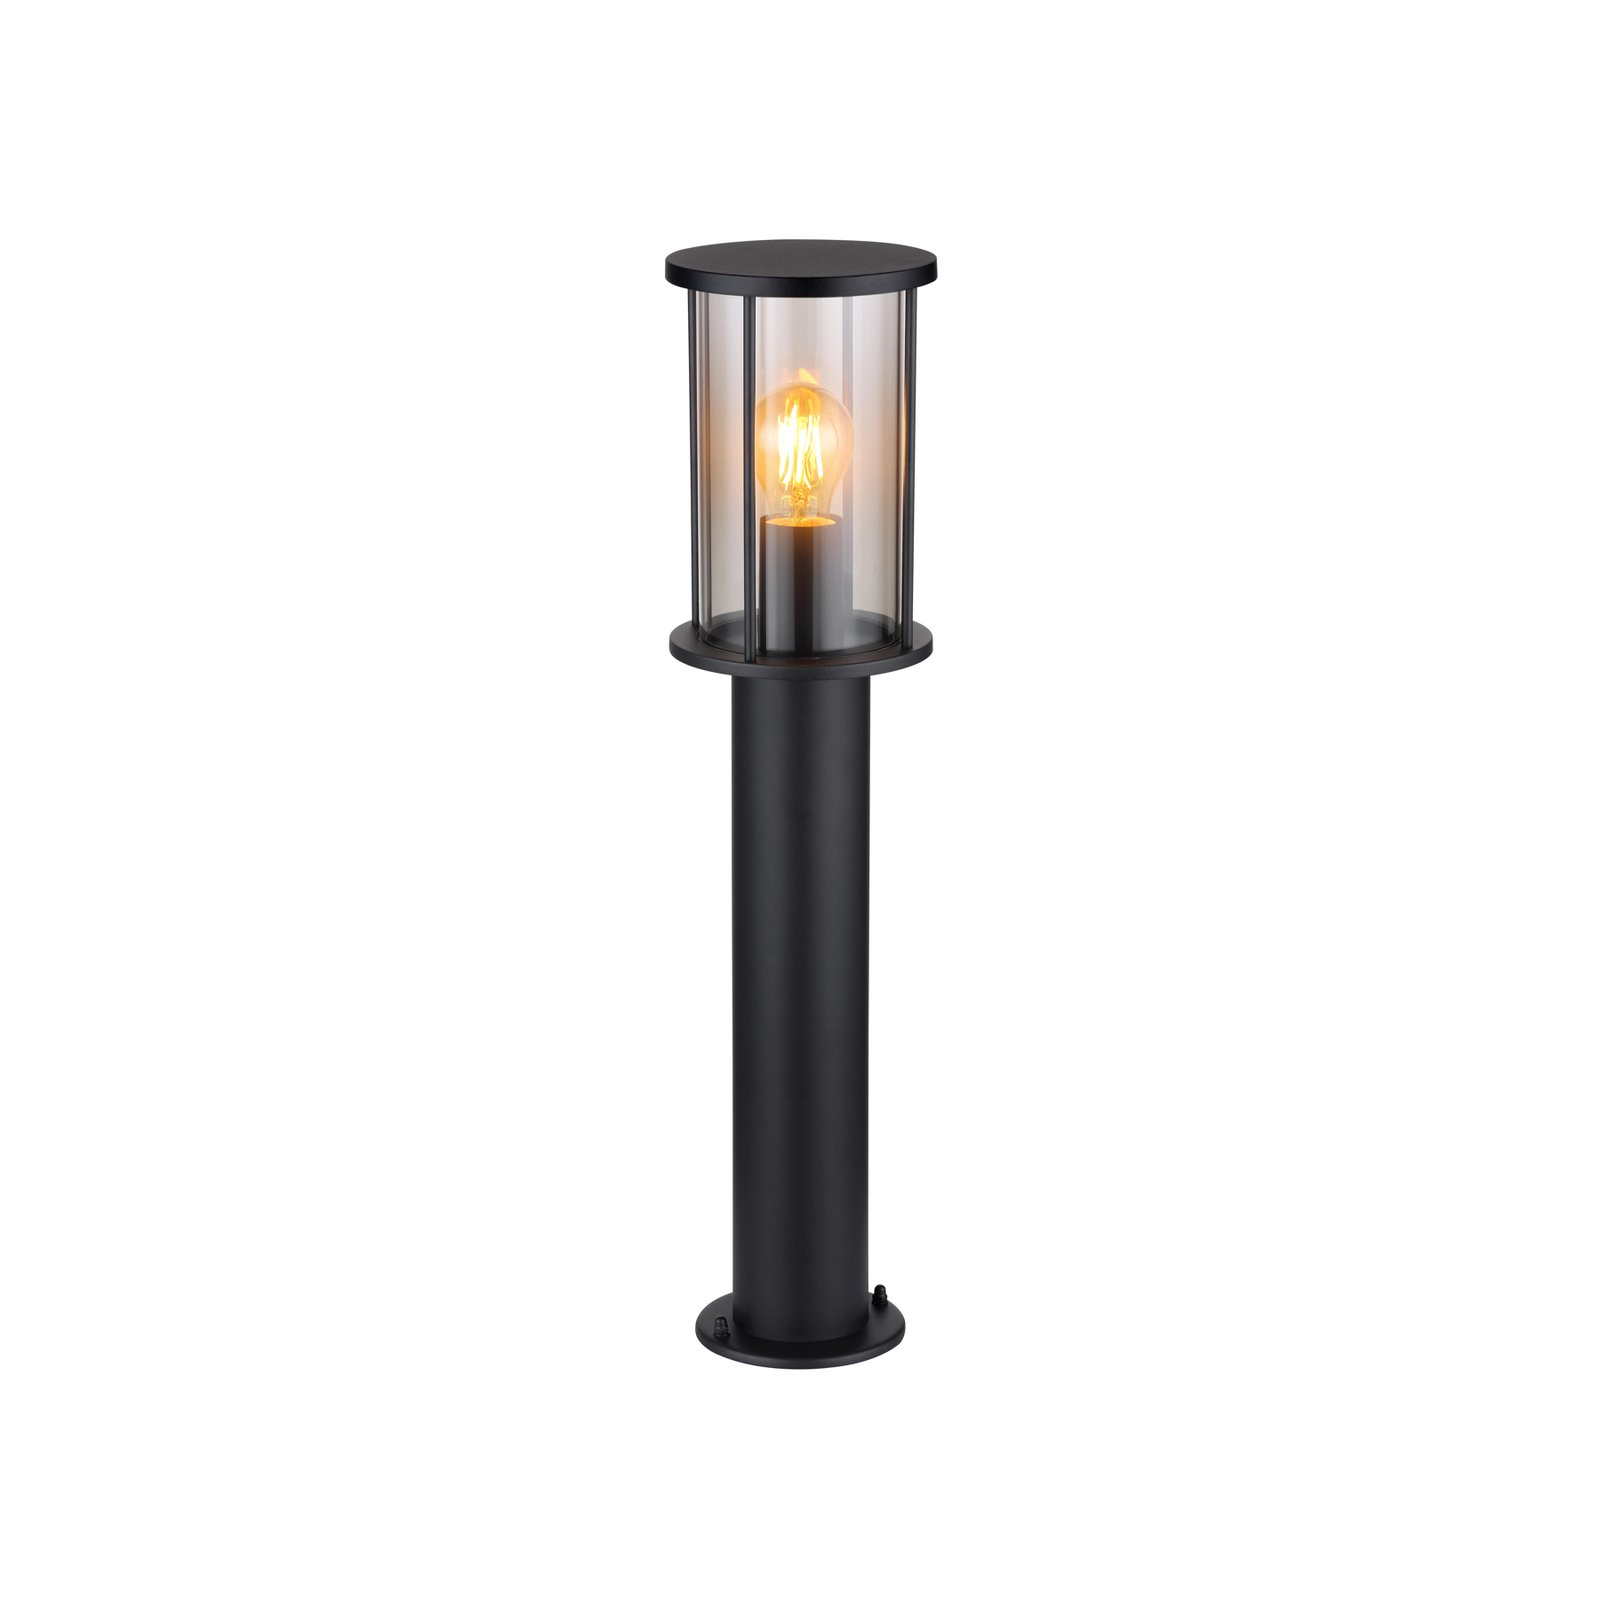 Luminaire pour socle Gracey, hauteur 60 cm, noir, inox, IP54